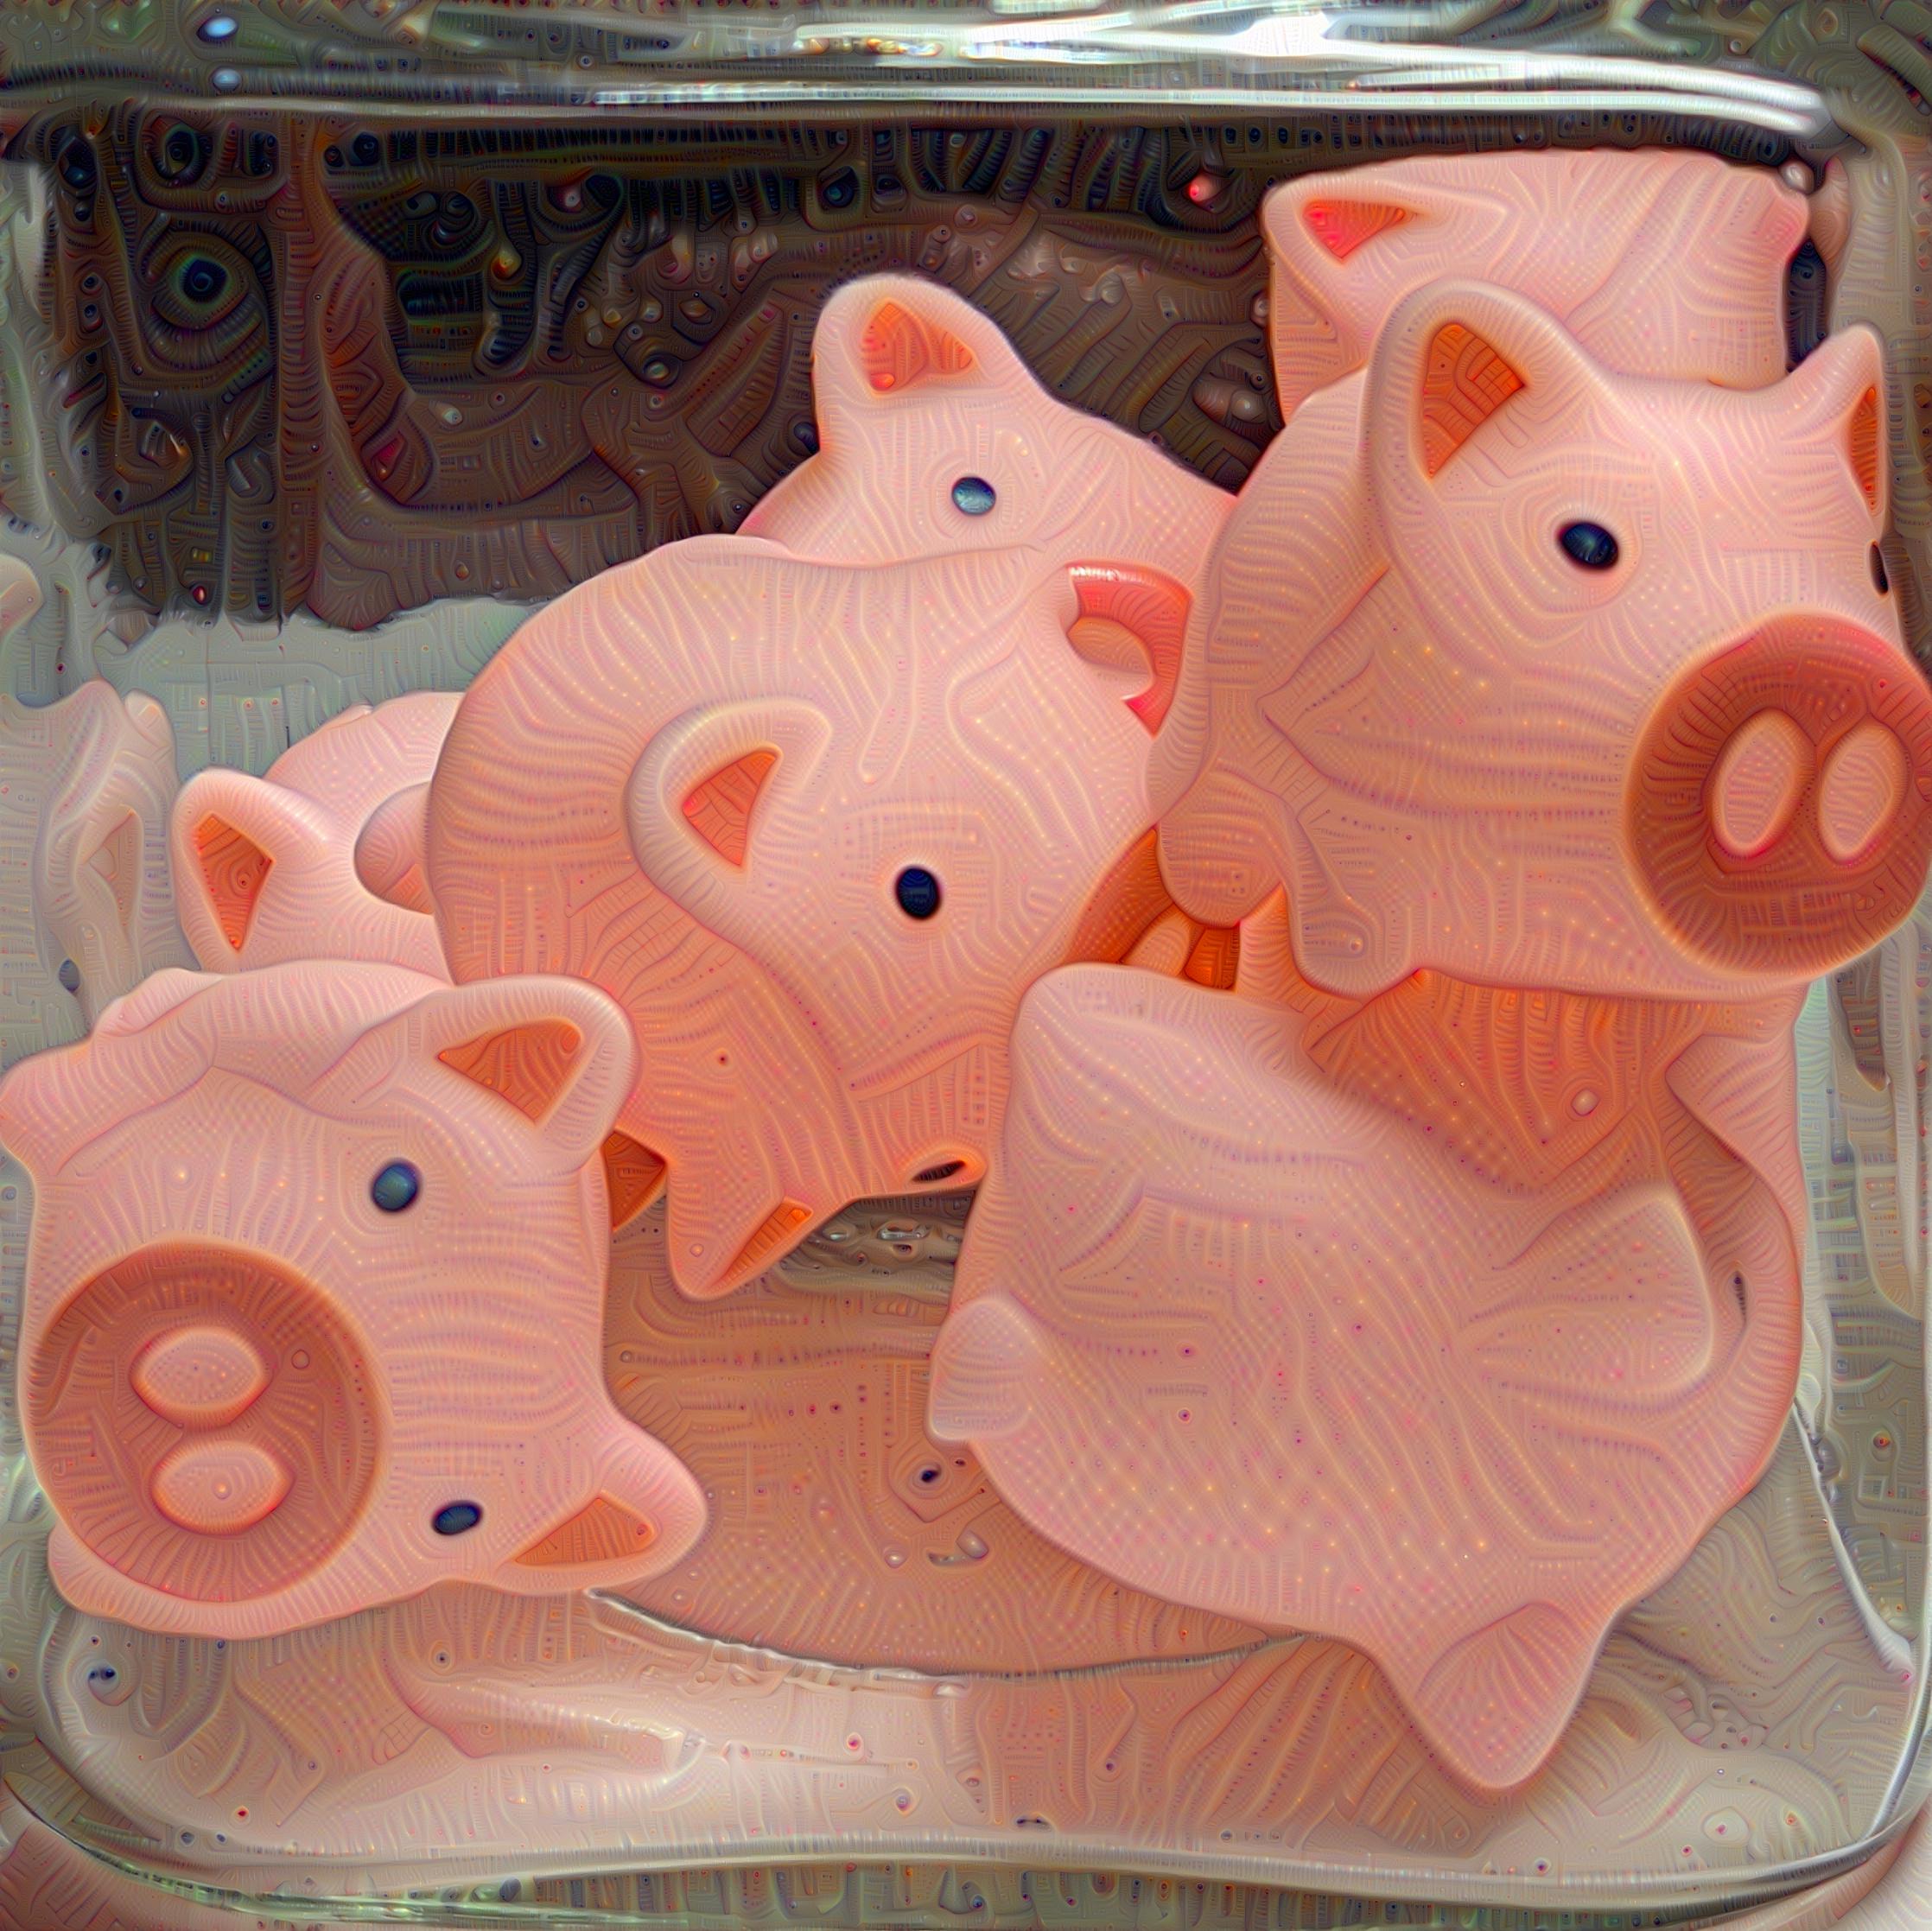 Pigs in a jar